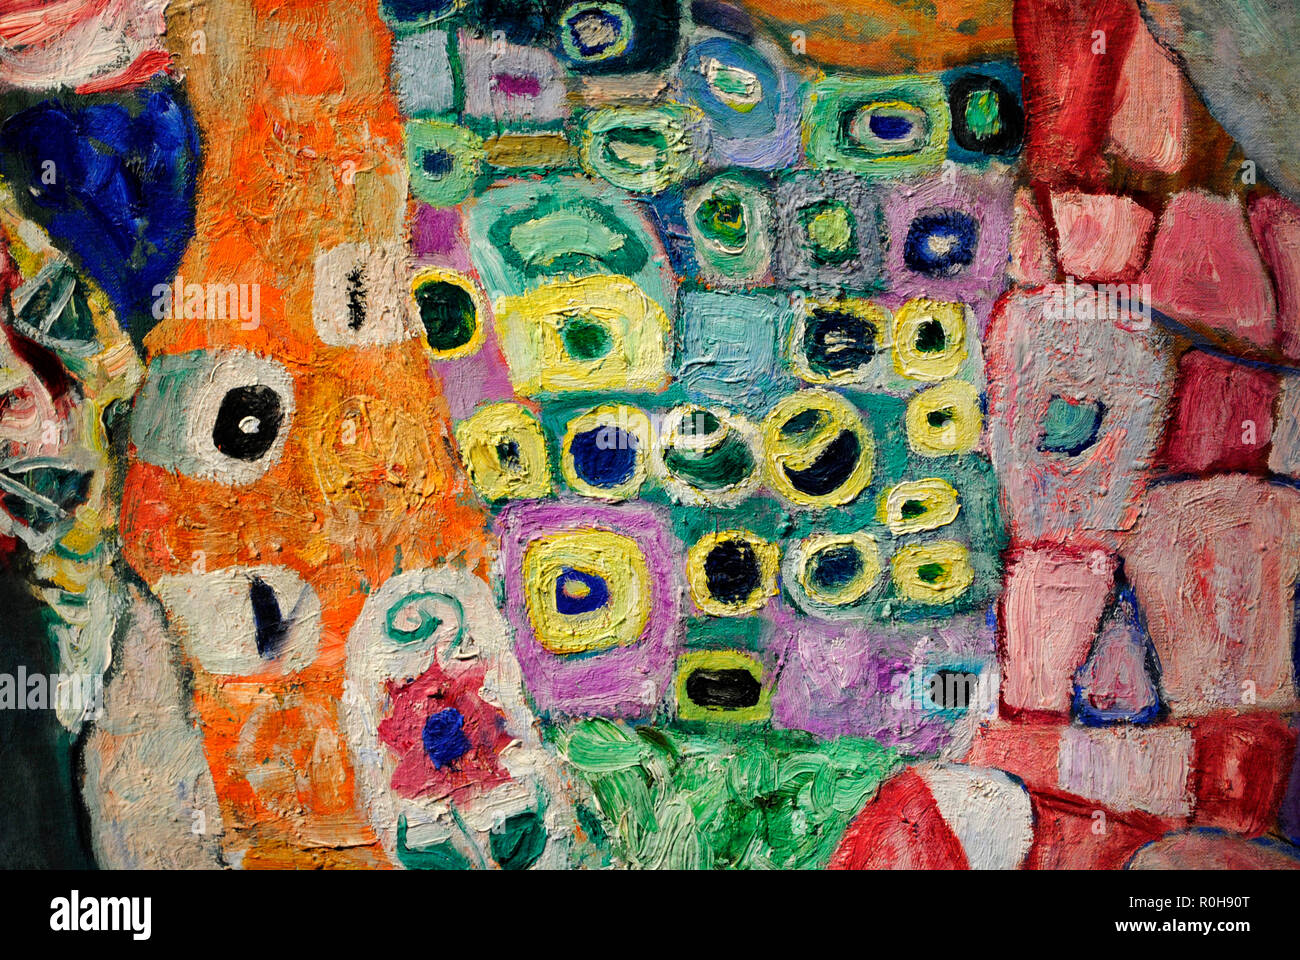 Gustav Klimt (Vienna, 1862-Vienna, 1918). Austriaco pittore simbolista. Membro del movimento della Secessione Viennese. Morte e vita "Morte e vita", 1915. Dettaglio. Olio su tela. 178 cm x 198 cm. Museo Leopold. Vienna. Austria. Foto Stock